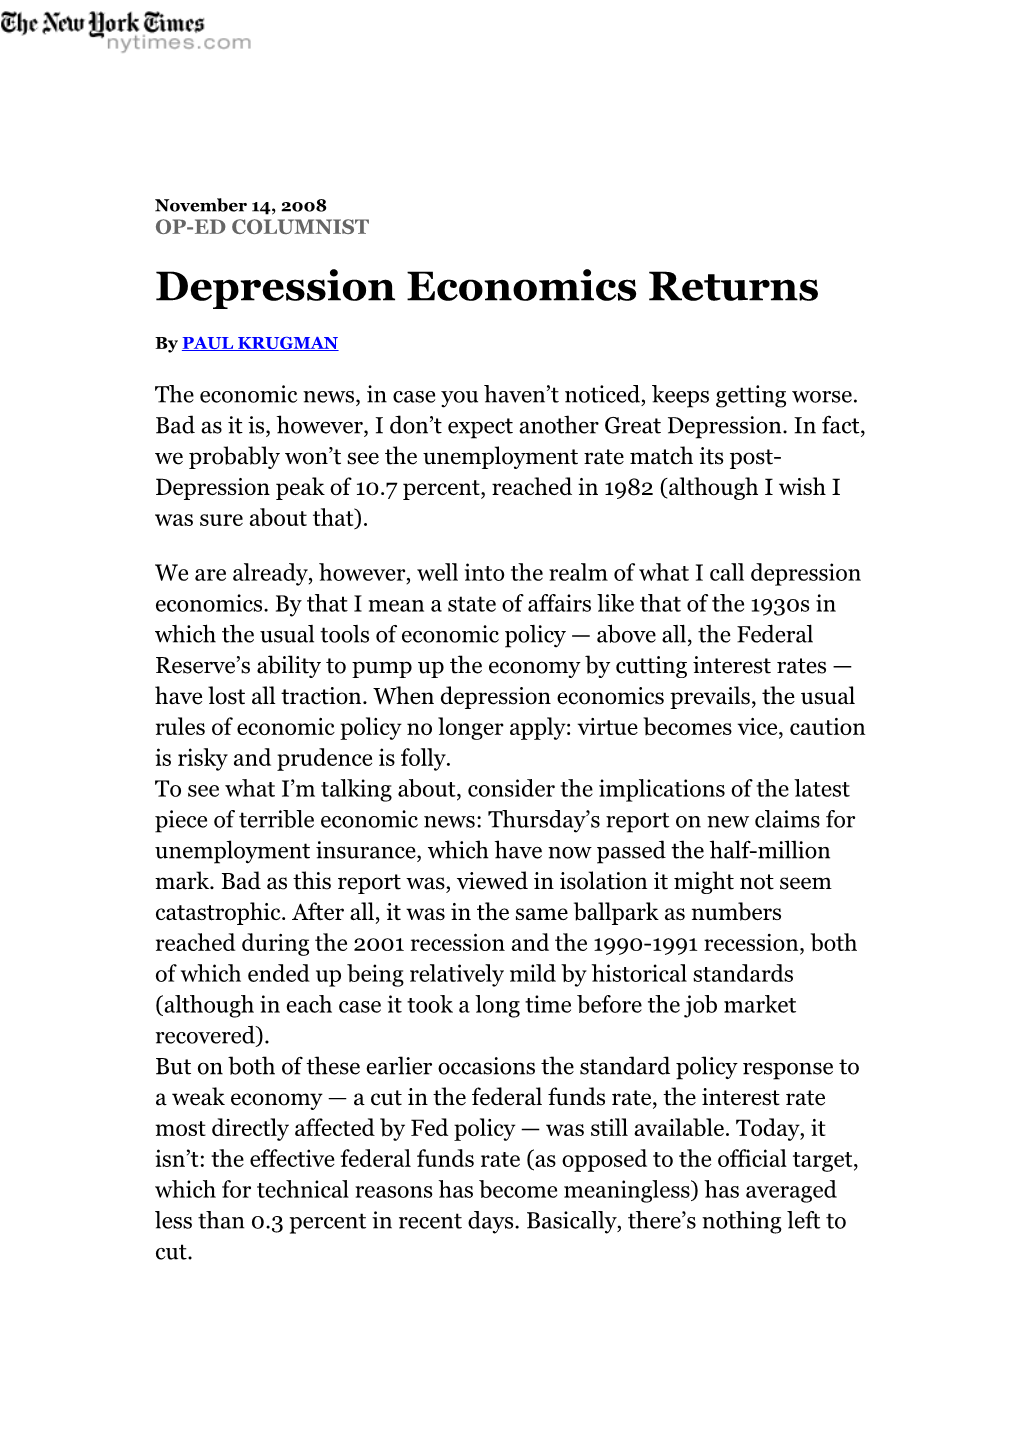 Depression Economics Returns